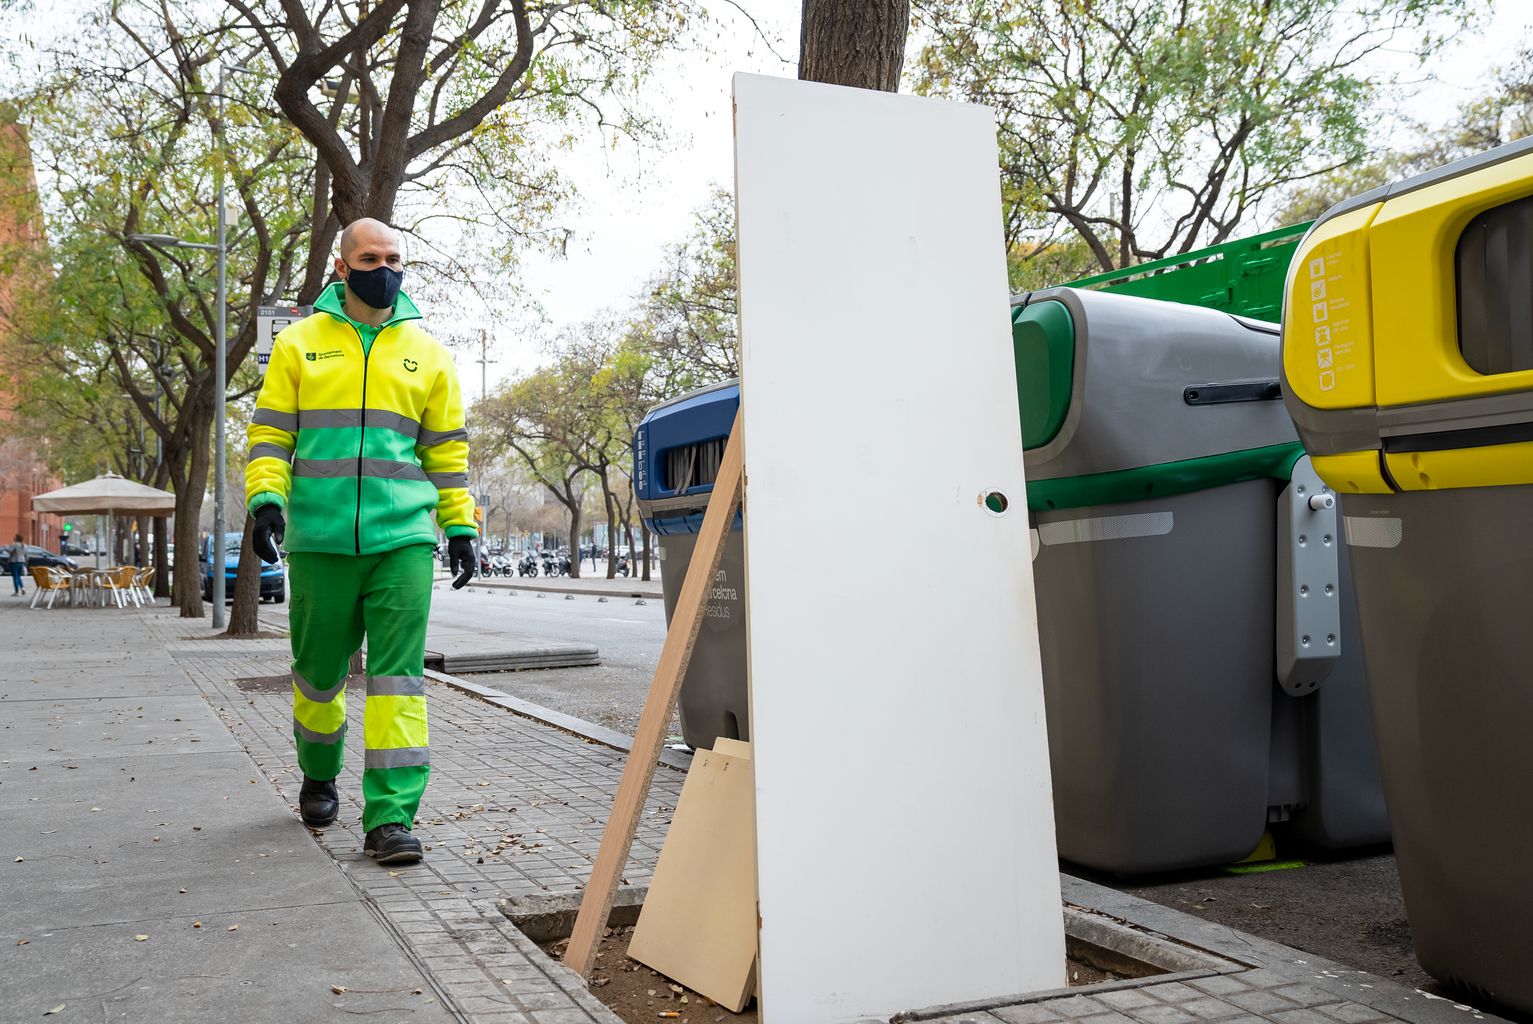 Un trabajador del servicio de limpieza (Cuidem Barcelona Residus) se dirige a recoger unos muebles que se encuentran en un alcorque delante de unos contenedores